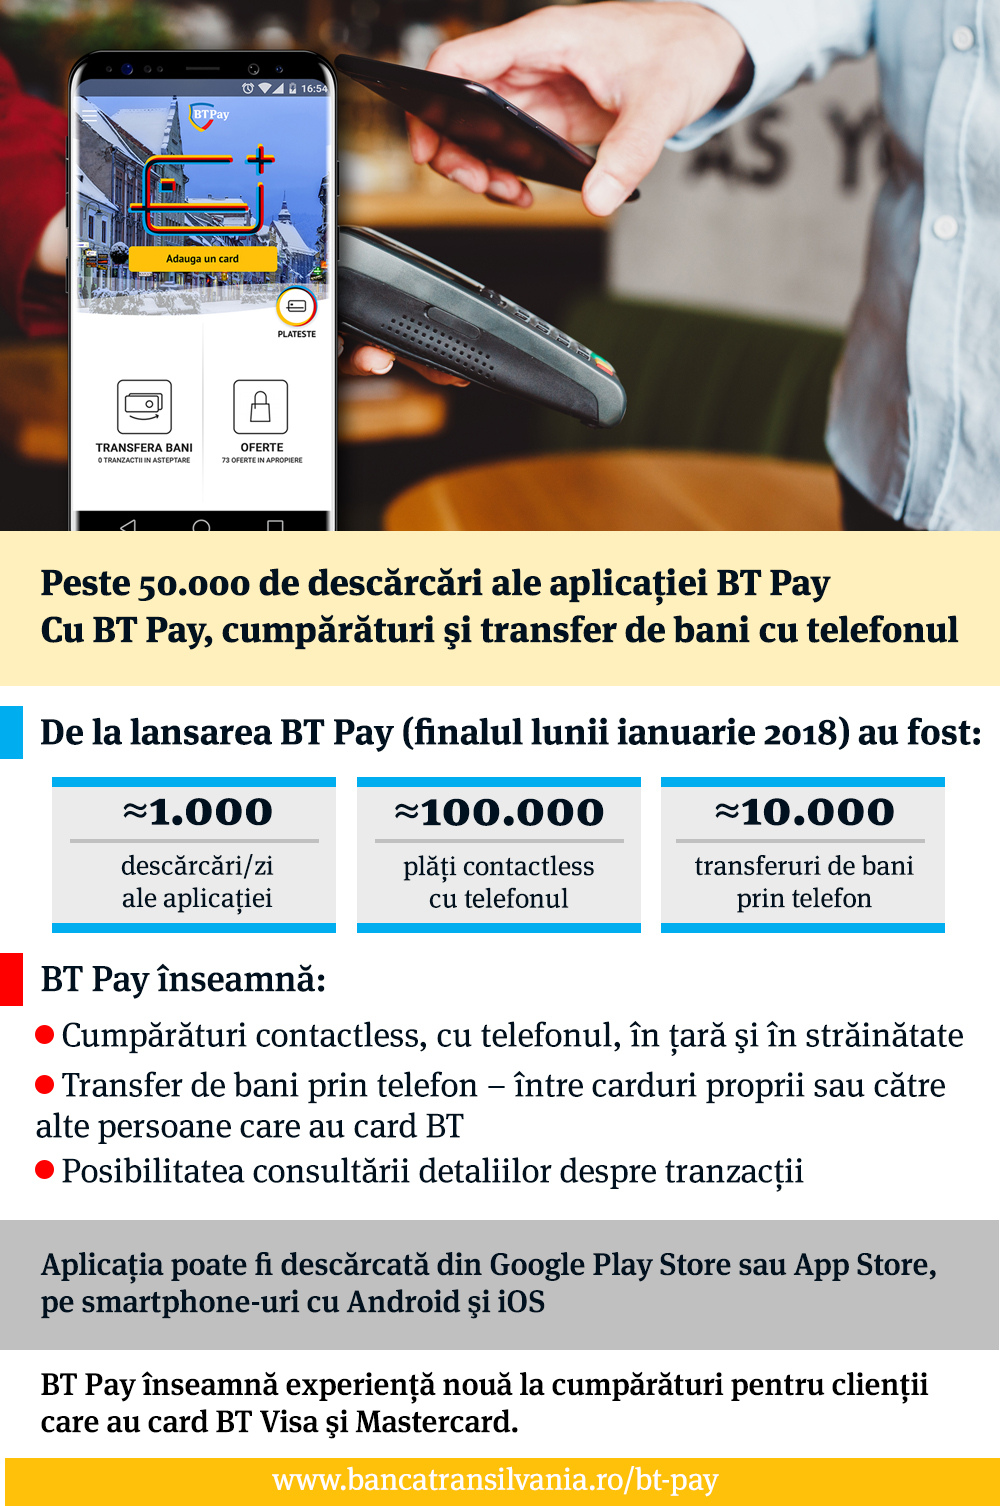 Polite Handbook gift Aplicatia BT Pay pentru cumparaturi si transfer de bani cu telefonul, peste  1.000 de descarcari/zi